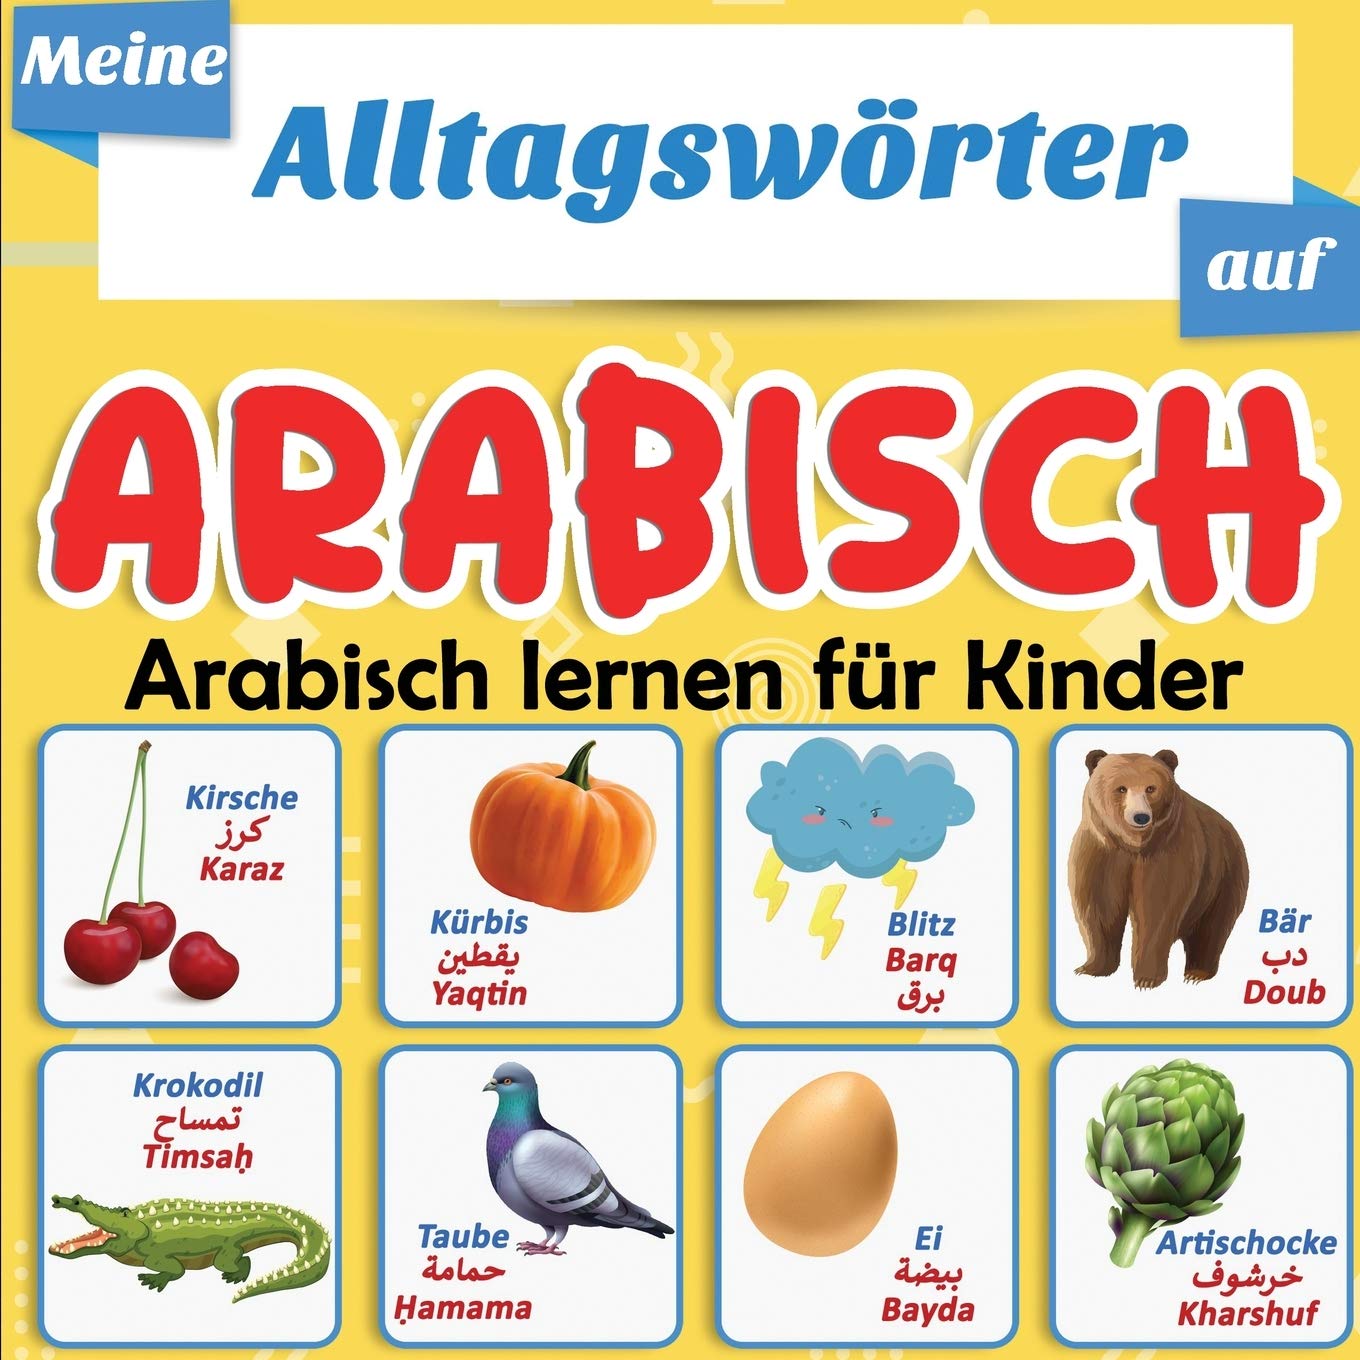 Meine Alltagswörter auf Arabisch : Arabisch lernen für Kinder: Mehr als